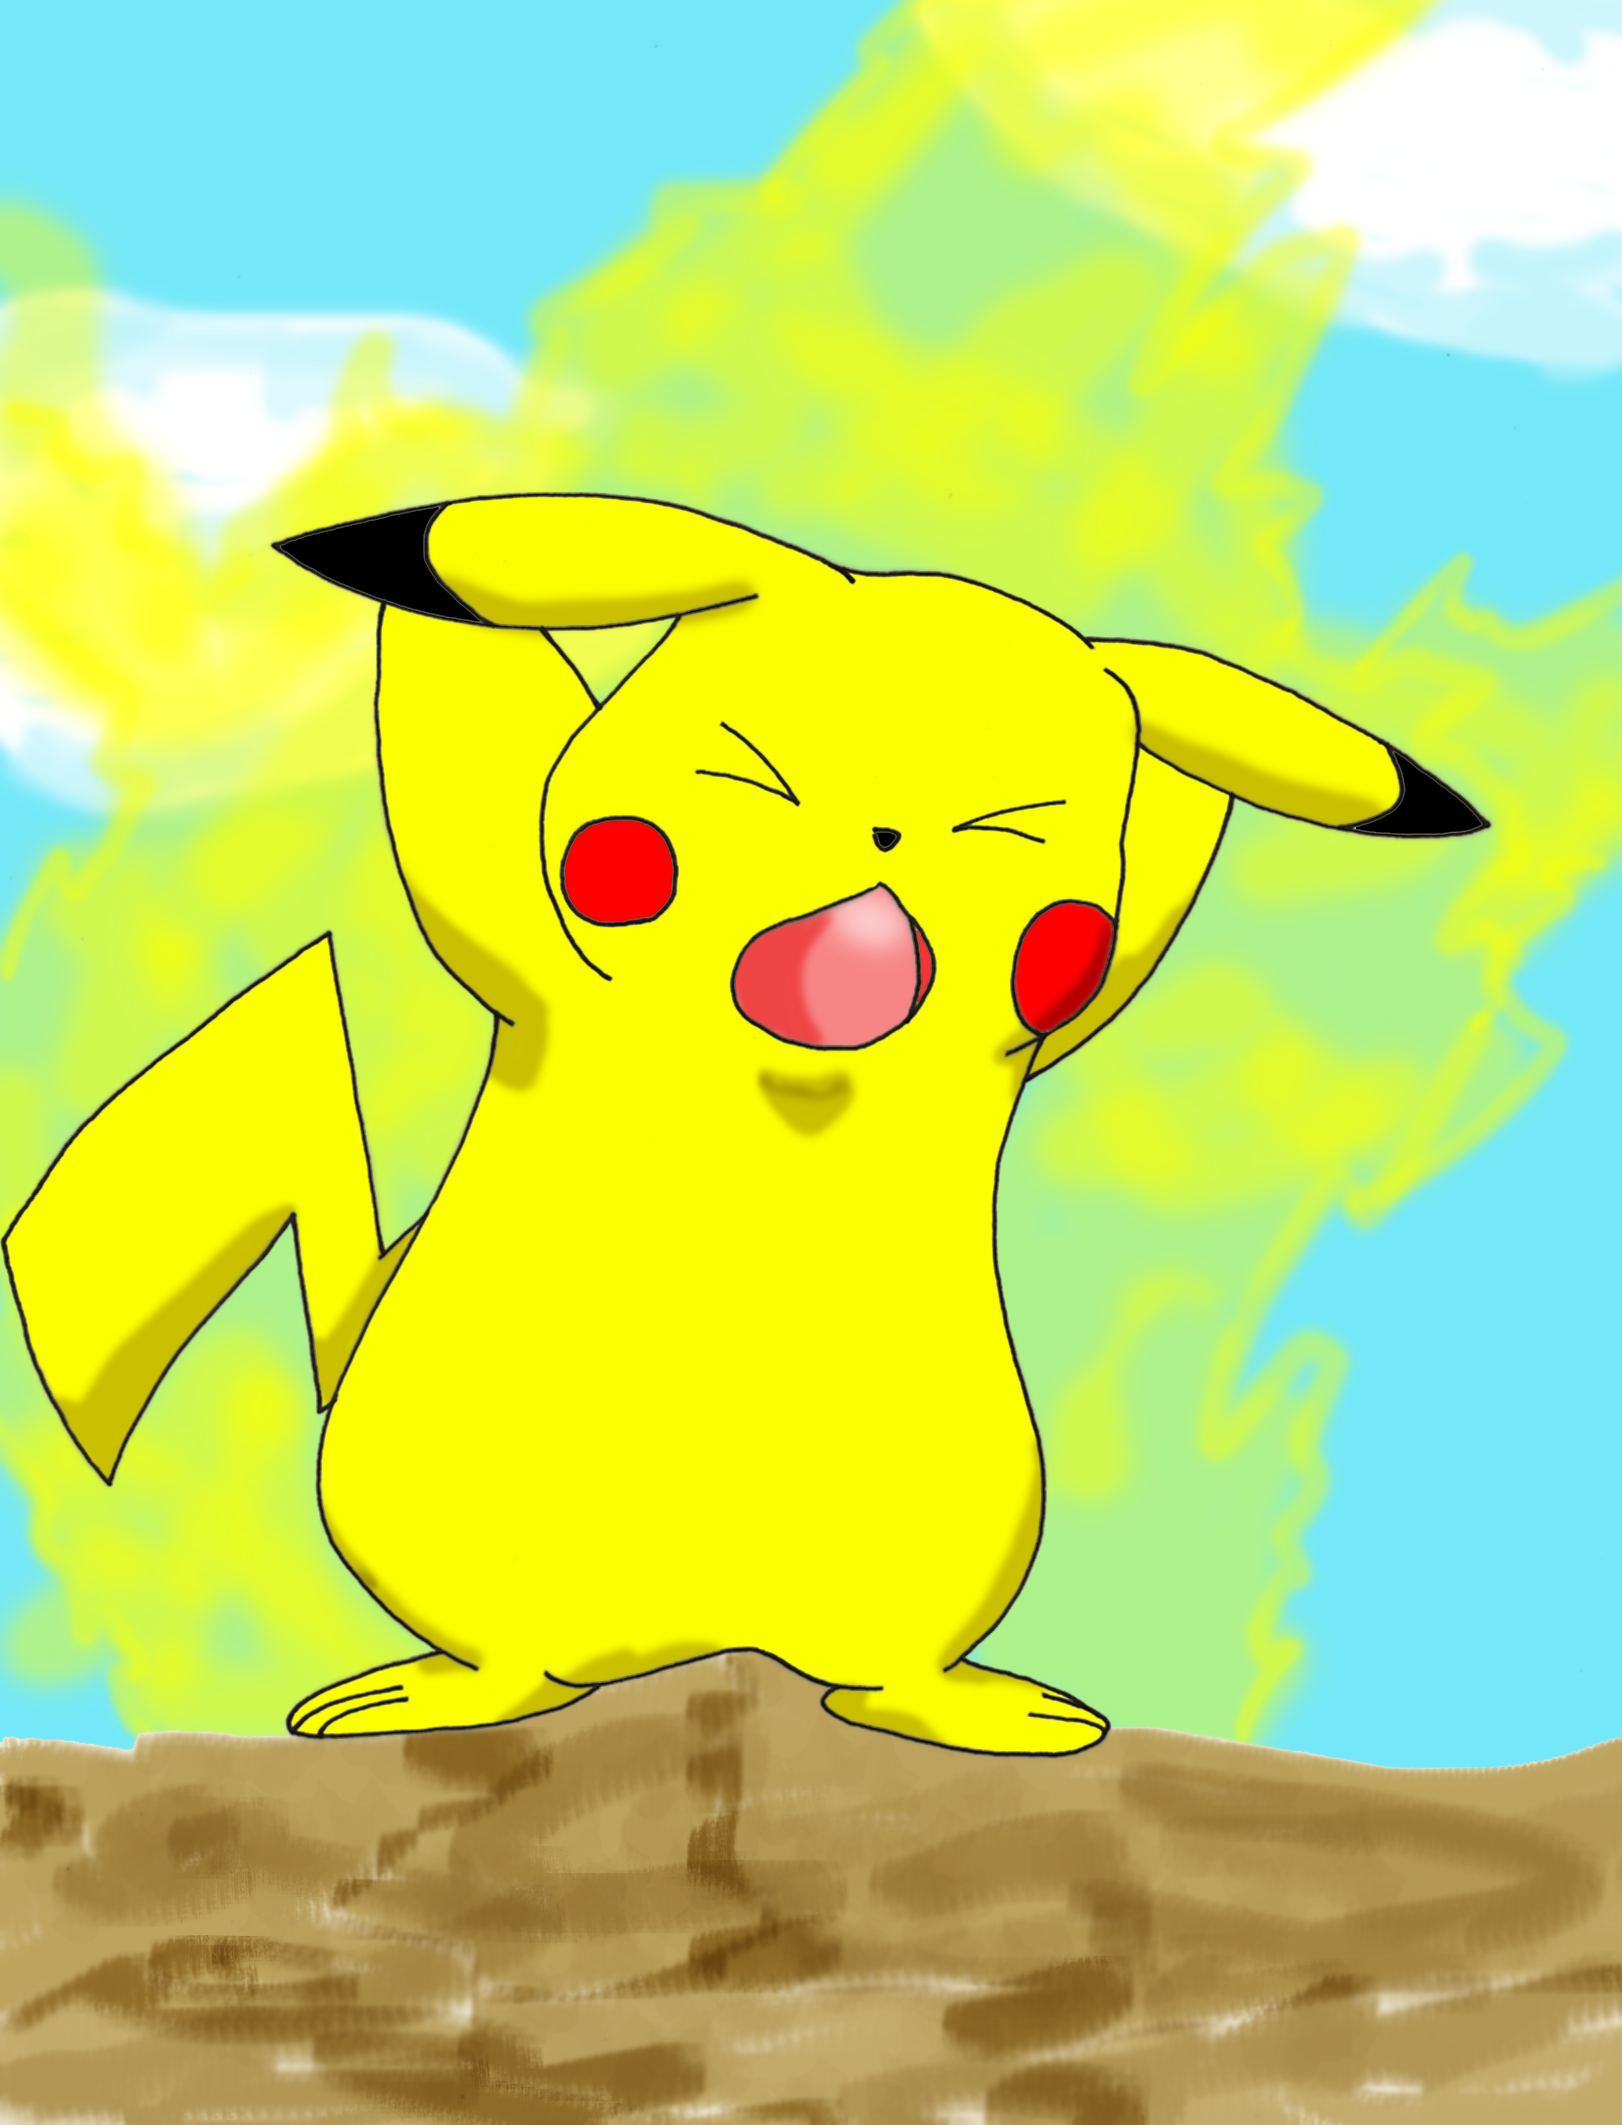 Pikachu's Thunderbolt by jkgoomba89